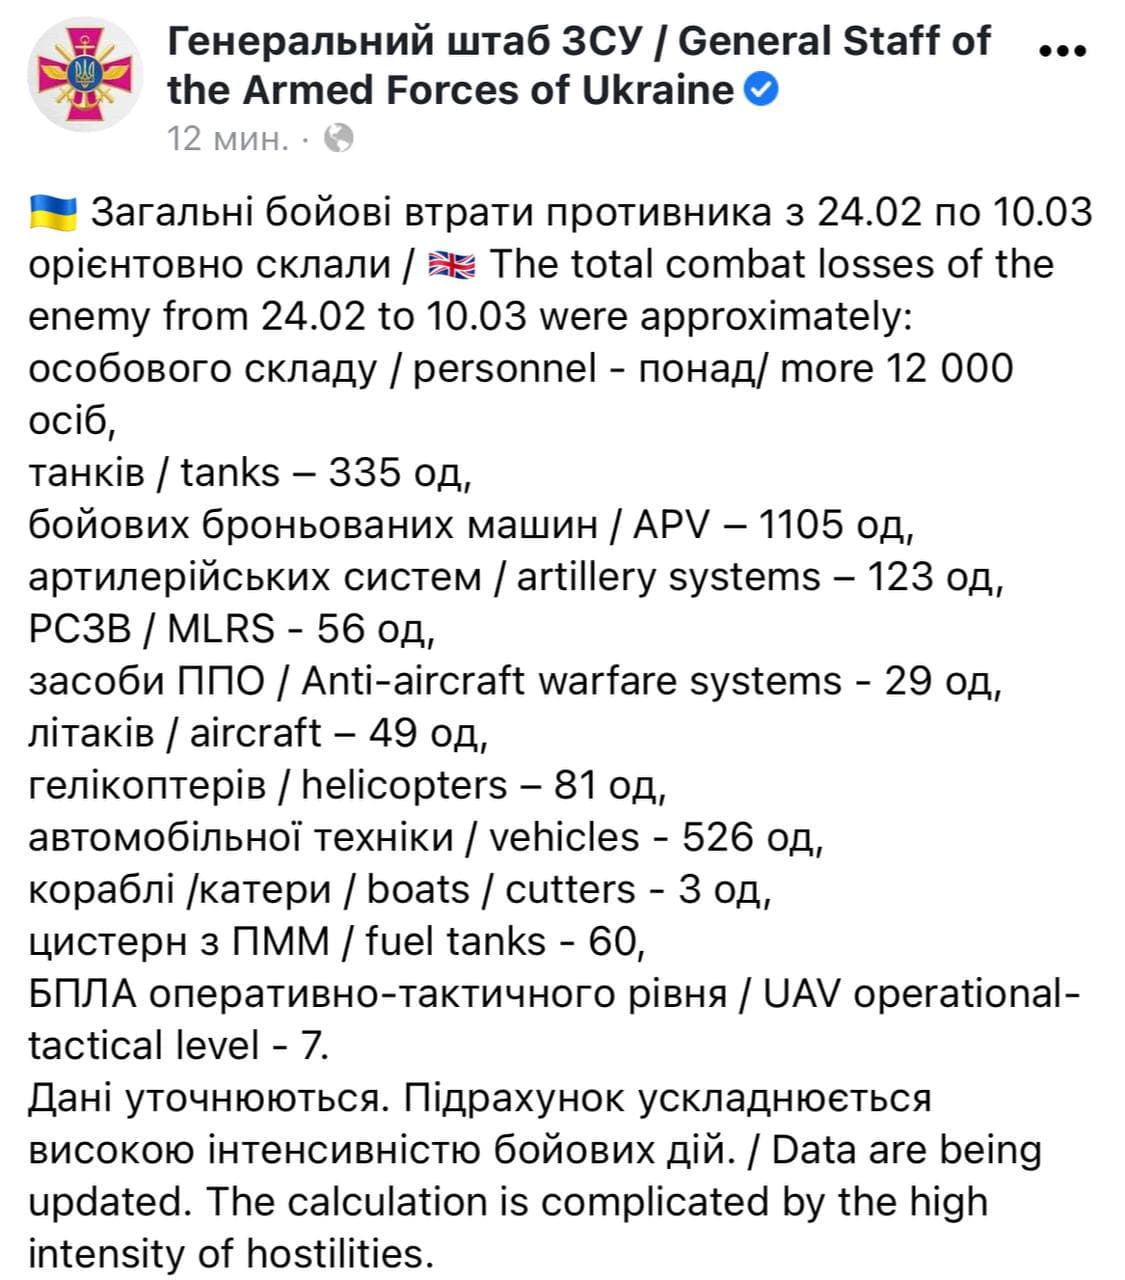 Вторжение РФ: что происходит в городах Украины (онлайн) - 1 - изображение